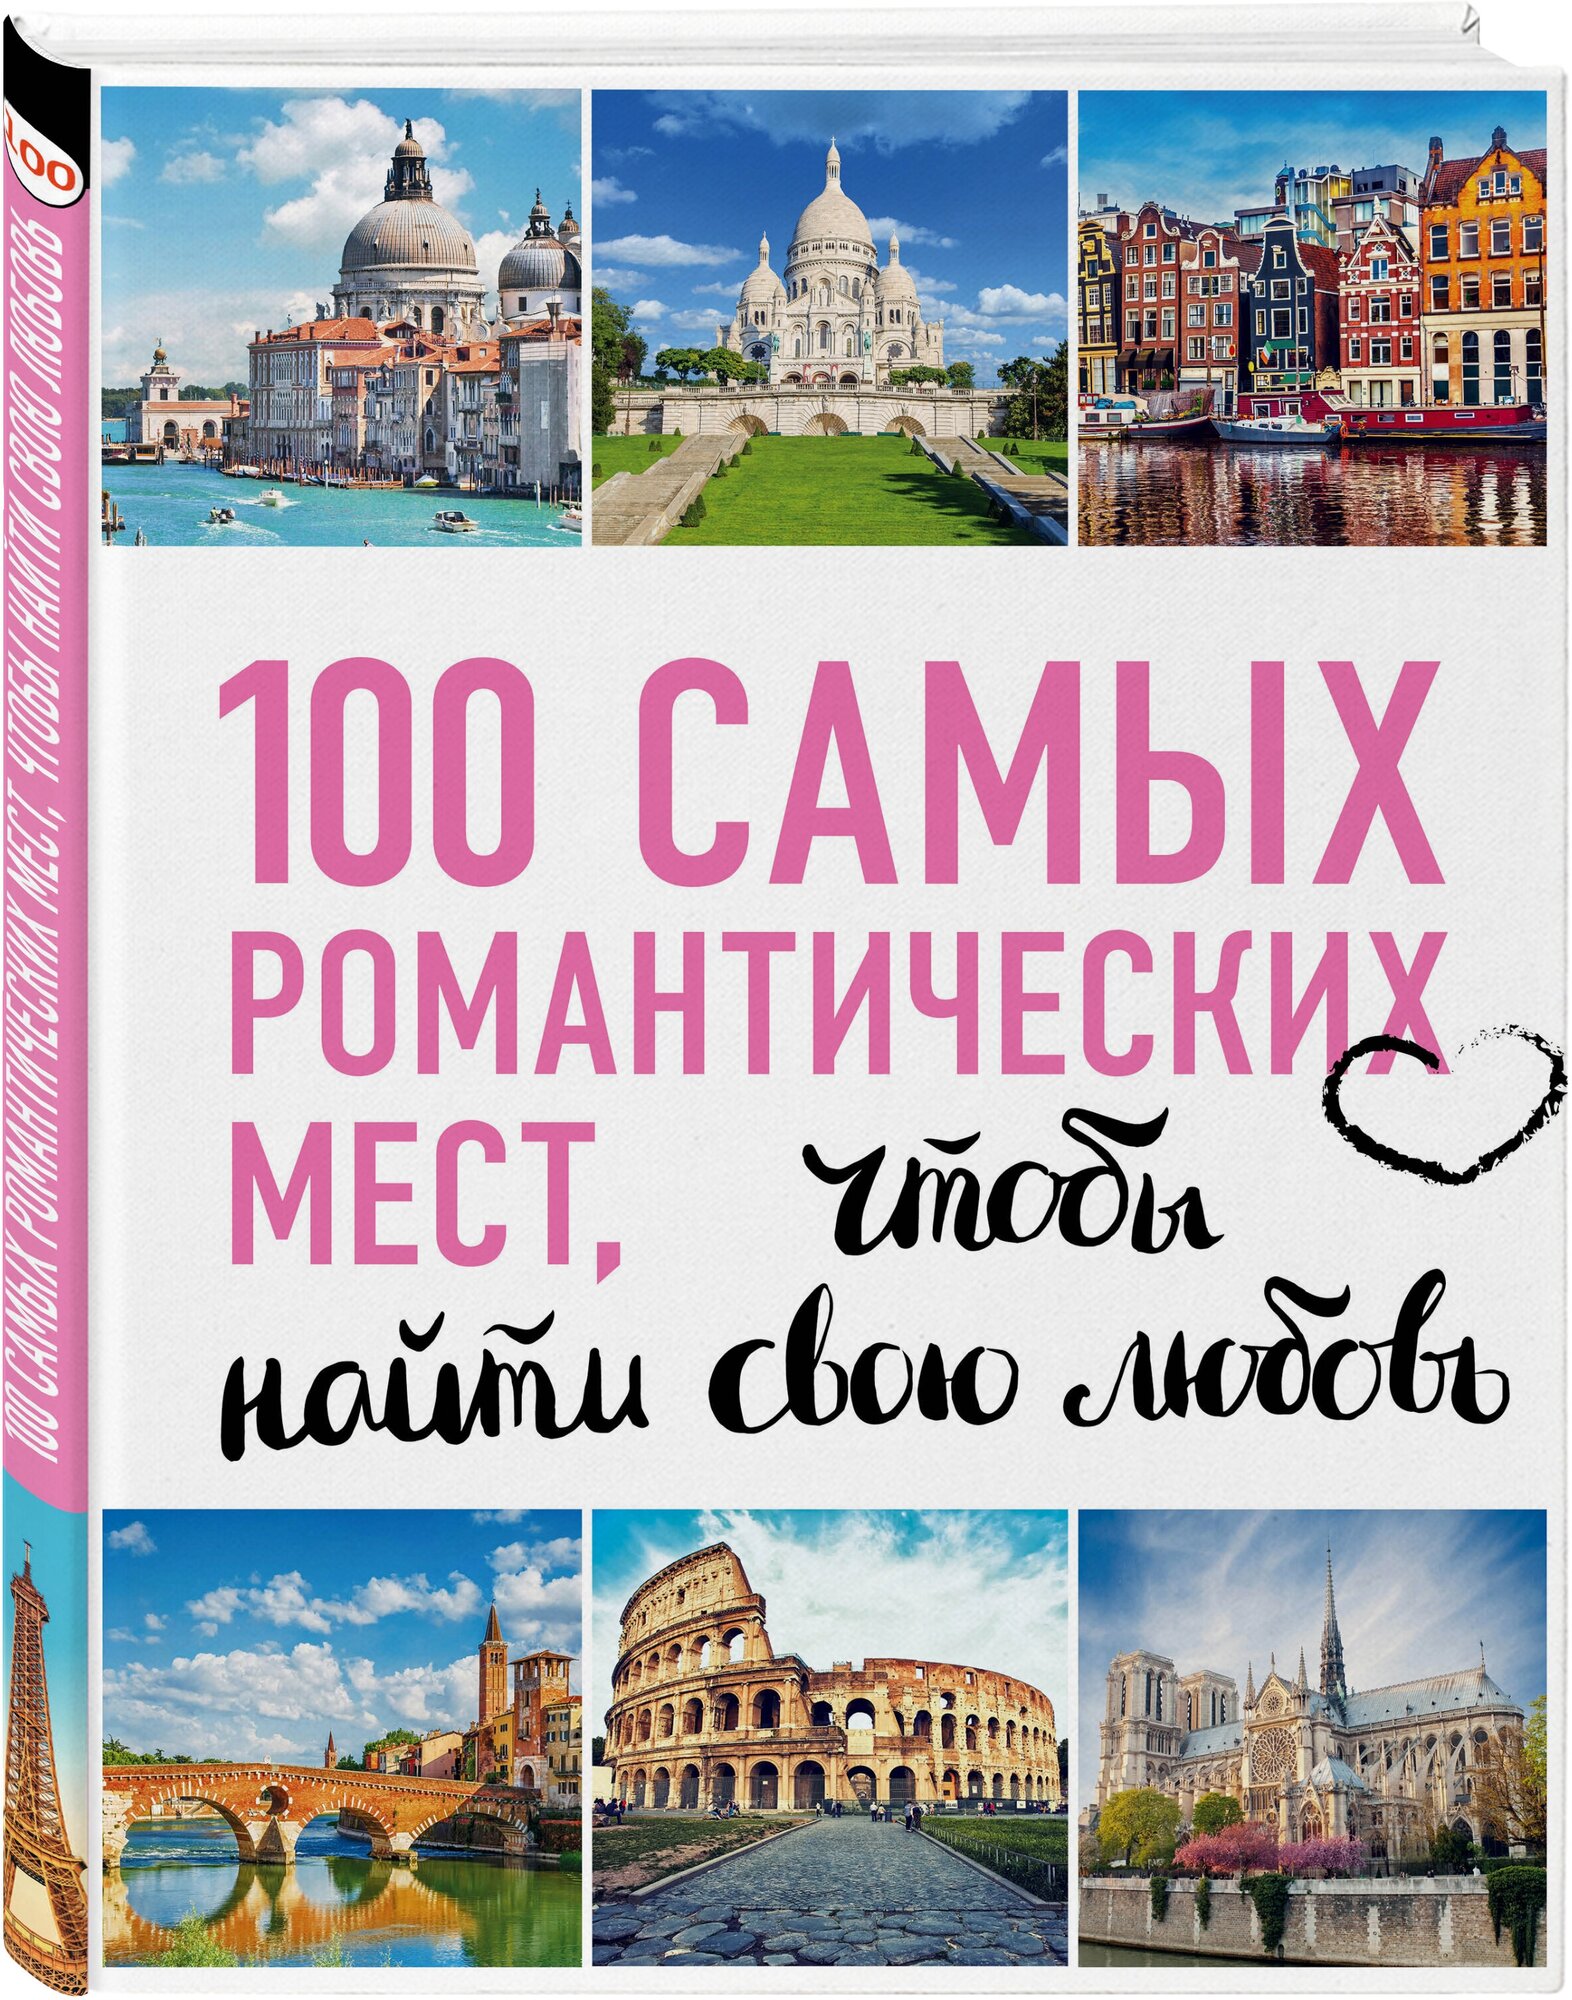 100 самых романтических мест мира, чтобы найти свою любовь - фото №1